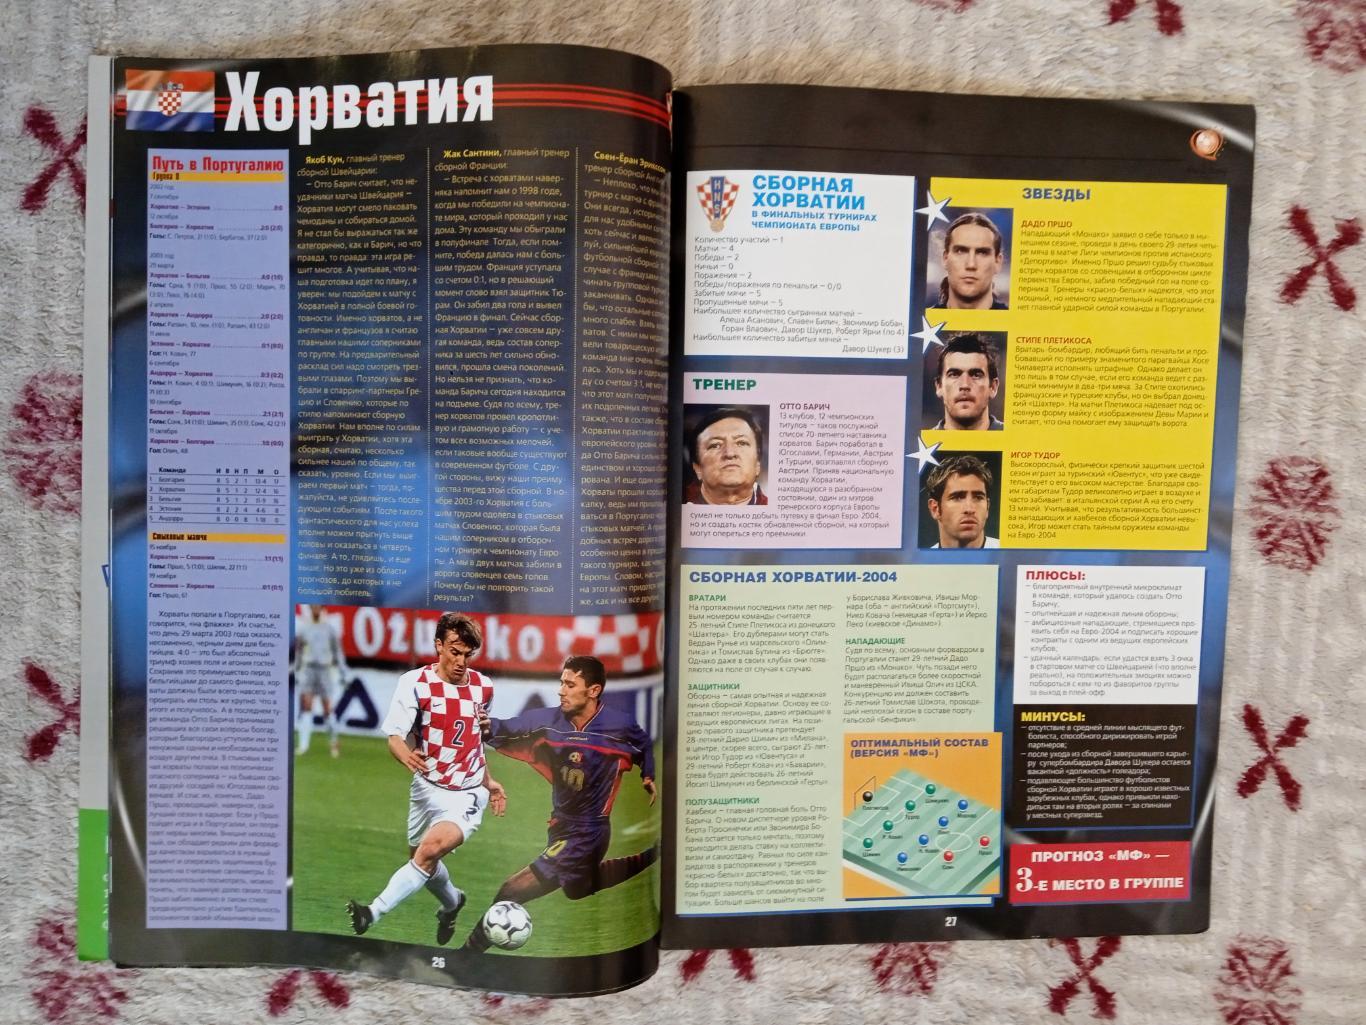 Журнал.Мой футбол.Специальный выпуск 2004 г. (ЧЕ 2004 Португалия). 1